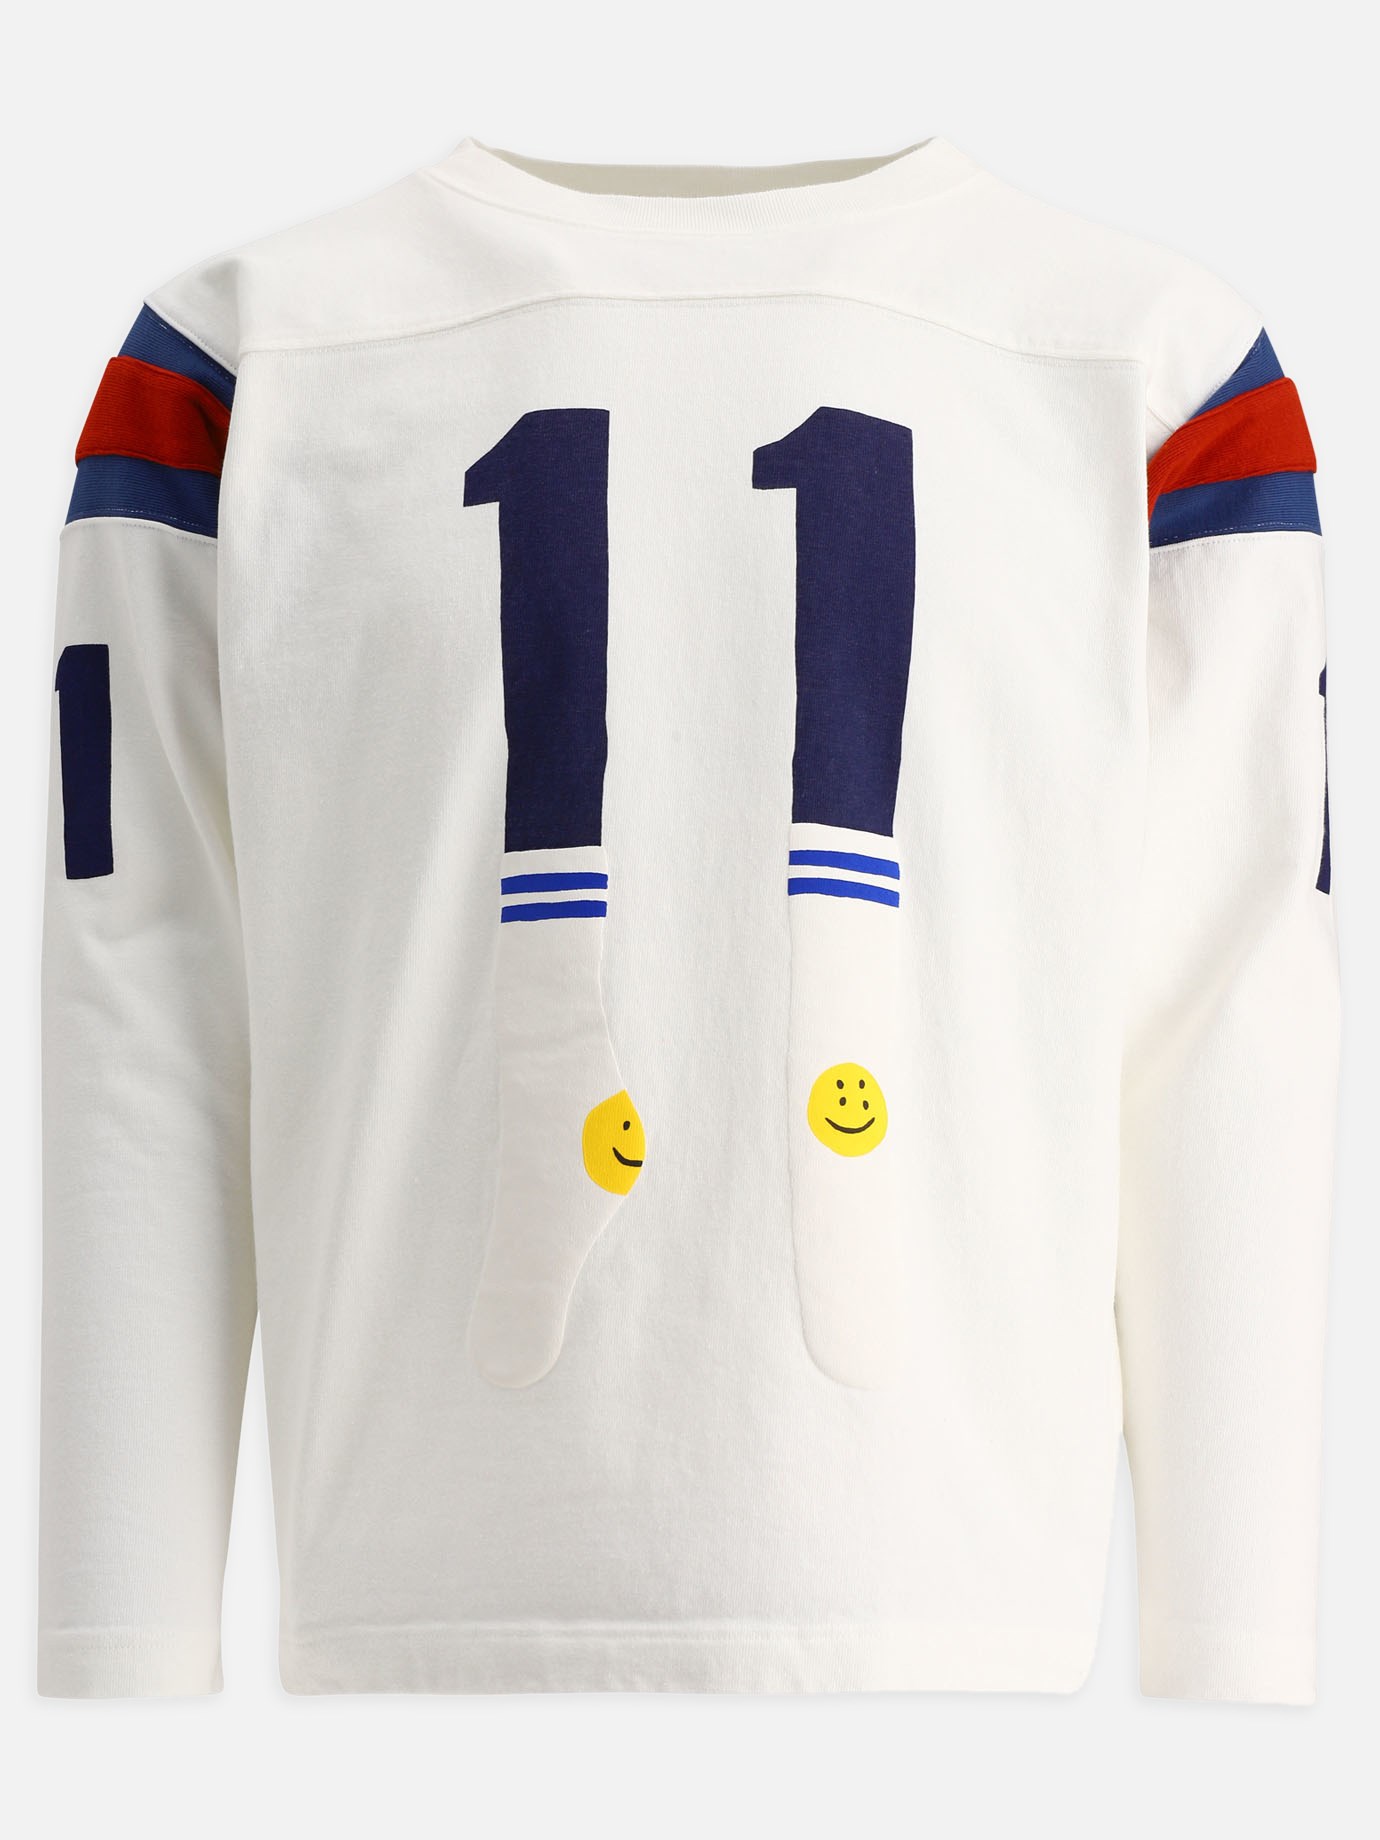  Football  t-shirtby Kapital - 5